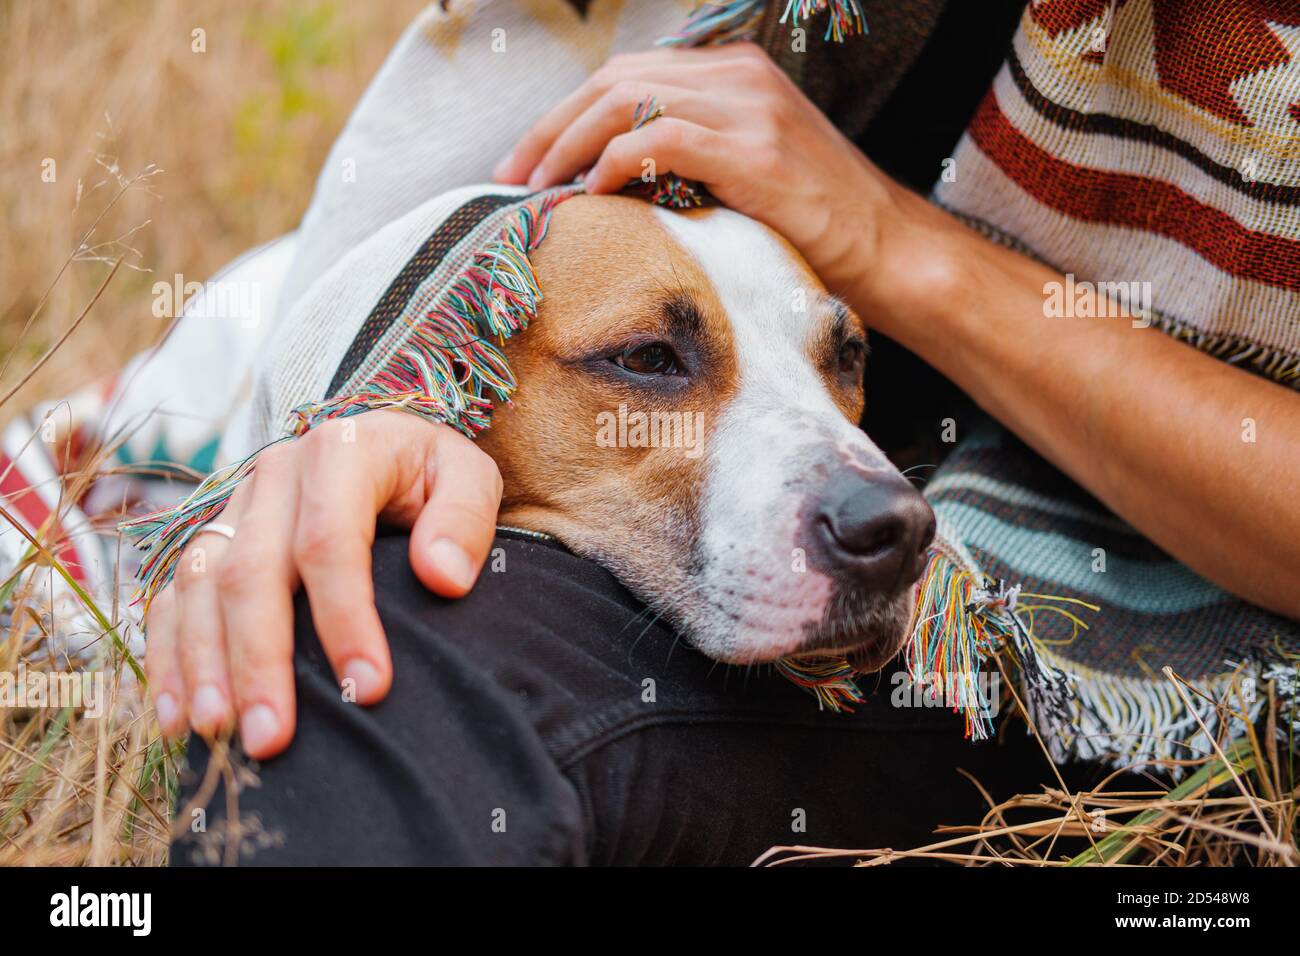 Mano humana acariciando al perro al aire libre, otoño frío escena Foto de stock